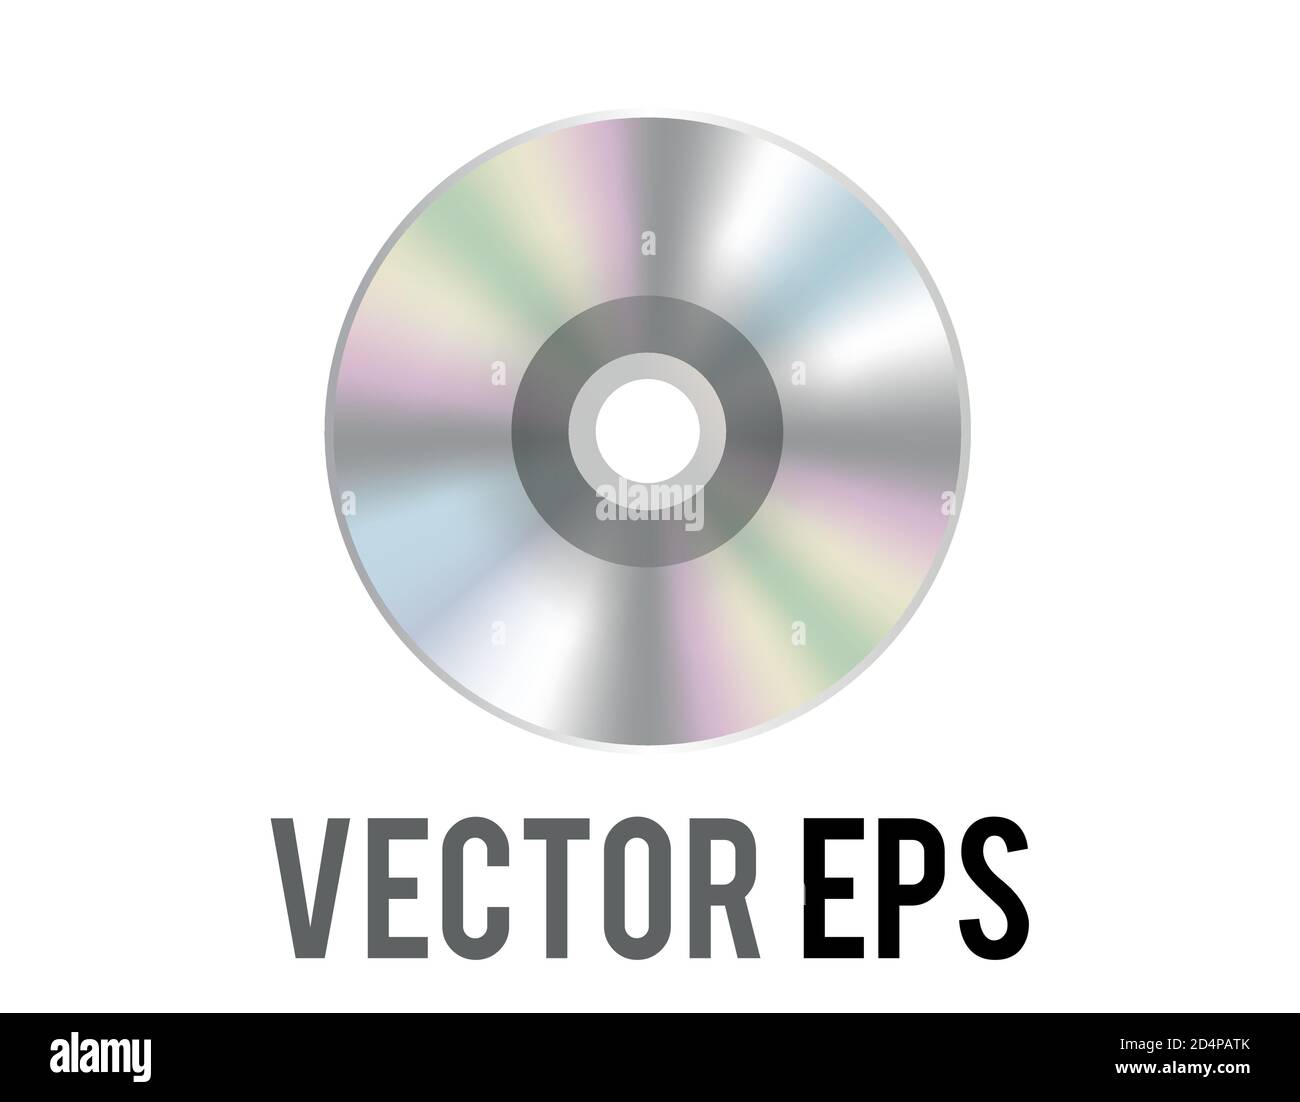 L'icône de disque optique argenté vectoriel isolée, utilisée pour représenter les CD, DVD et films connexes, le contenu musical, les albums Illustration de Vecteur